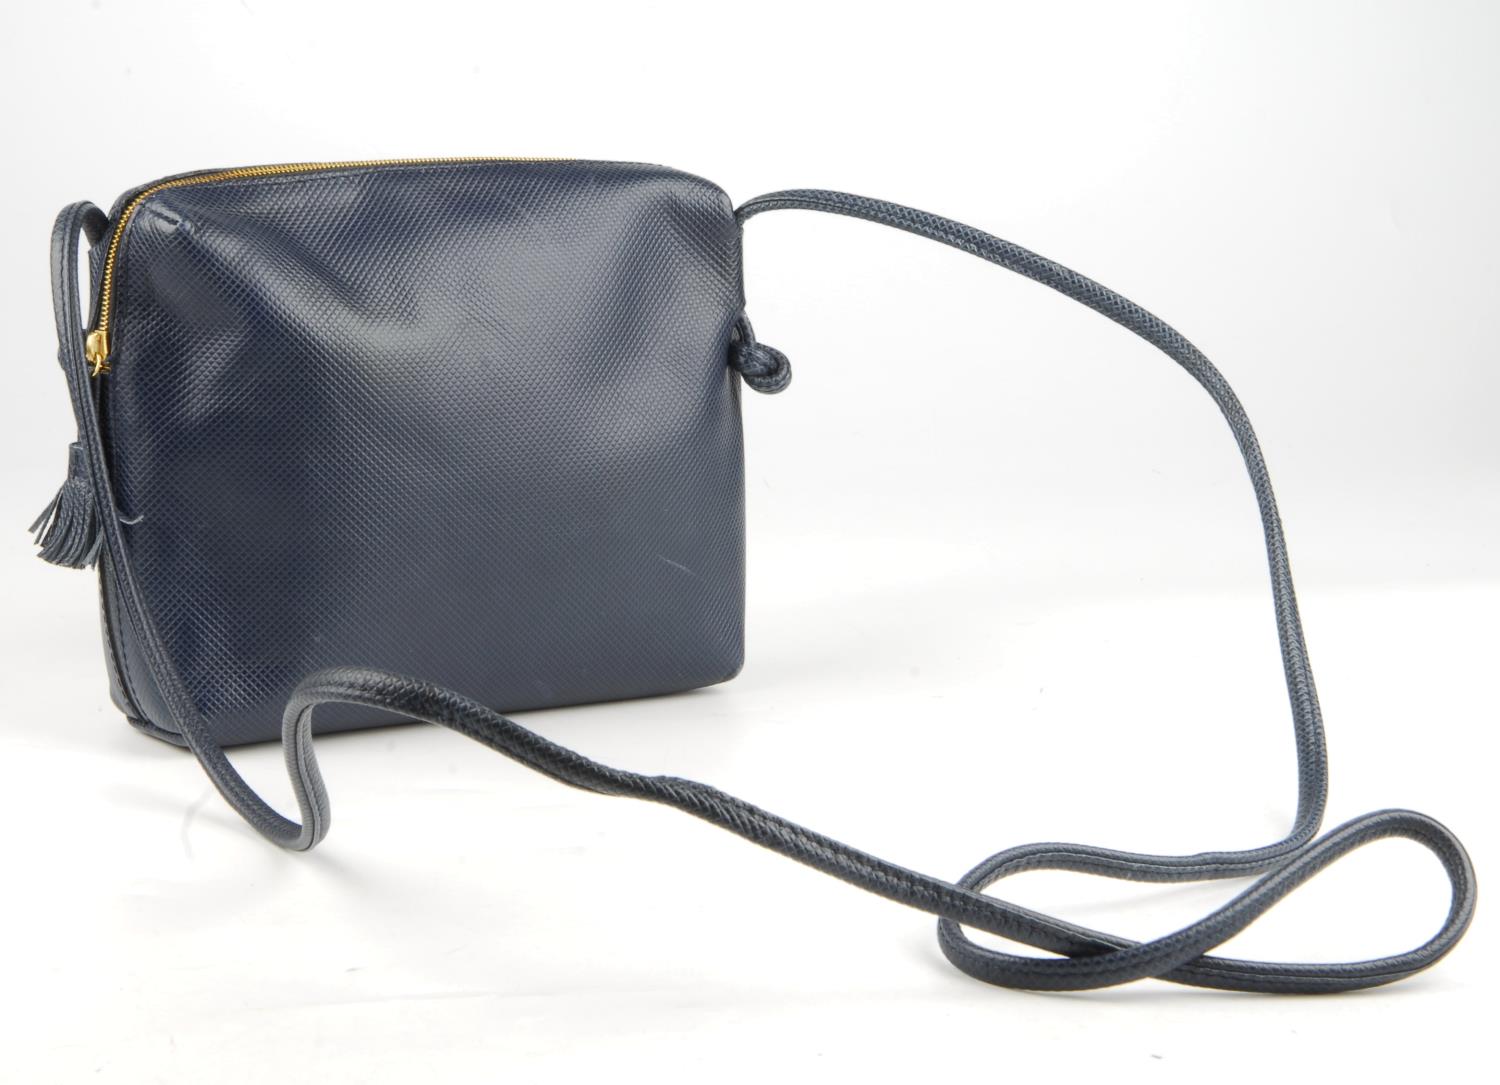 BOTTEGA VENETA - a small vintage blue handbag. - Image 2 of 3